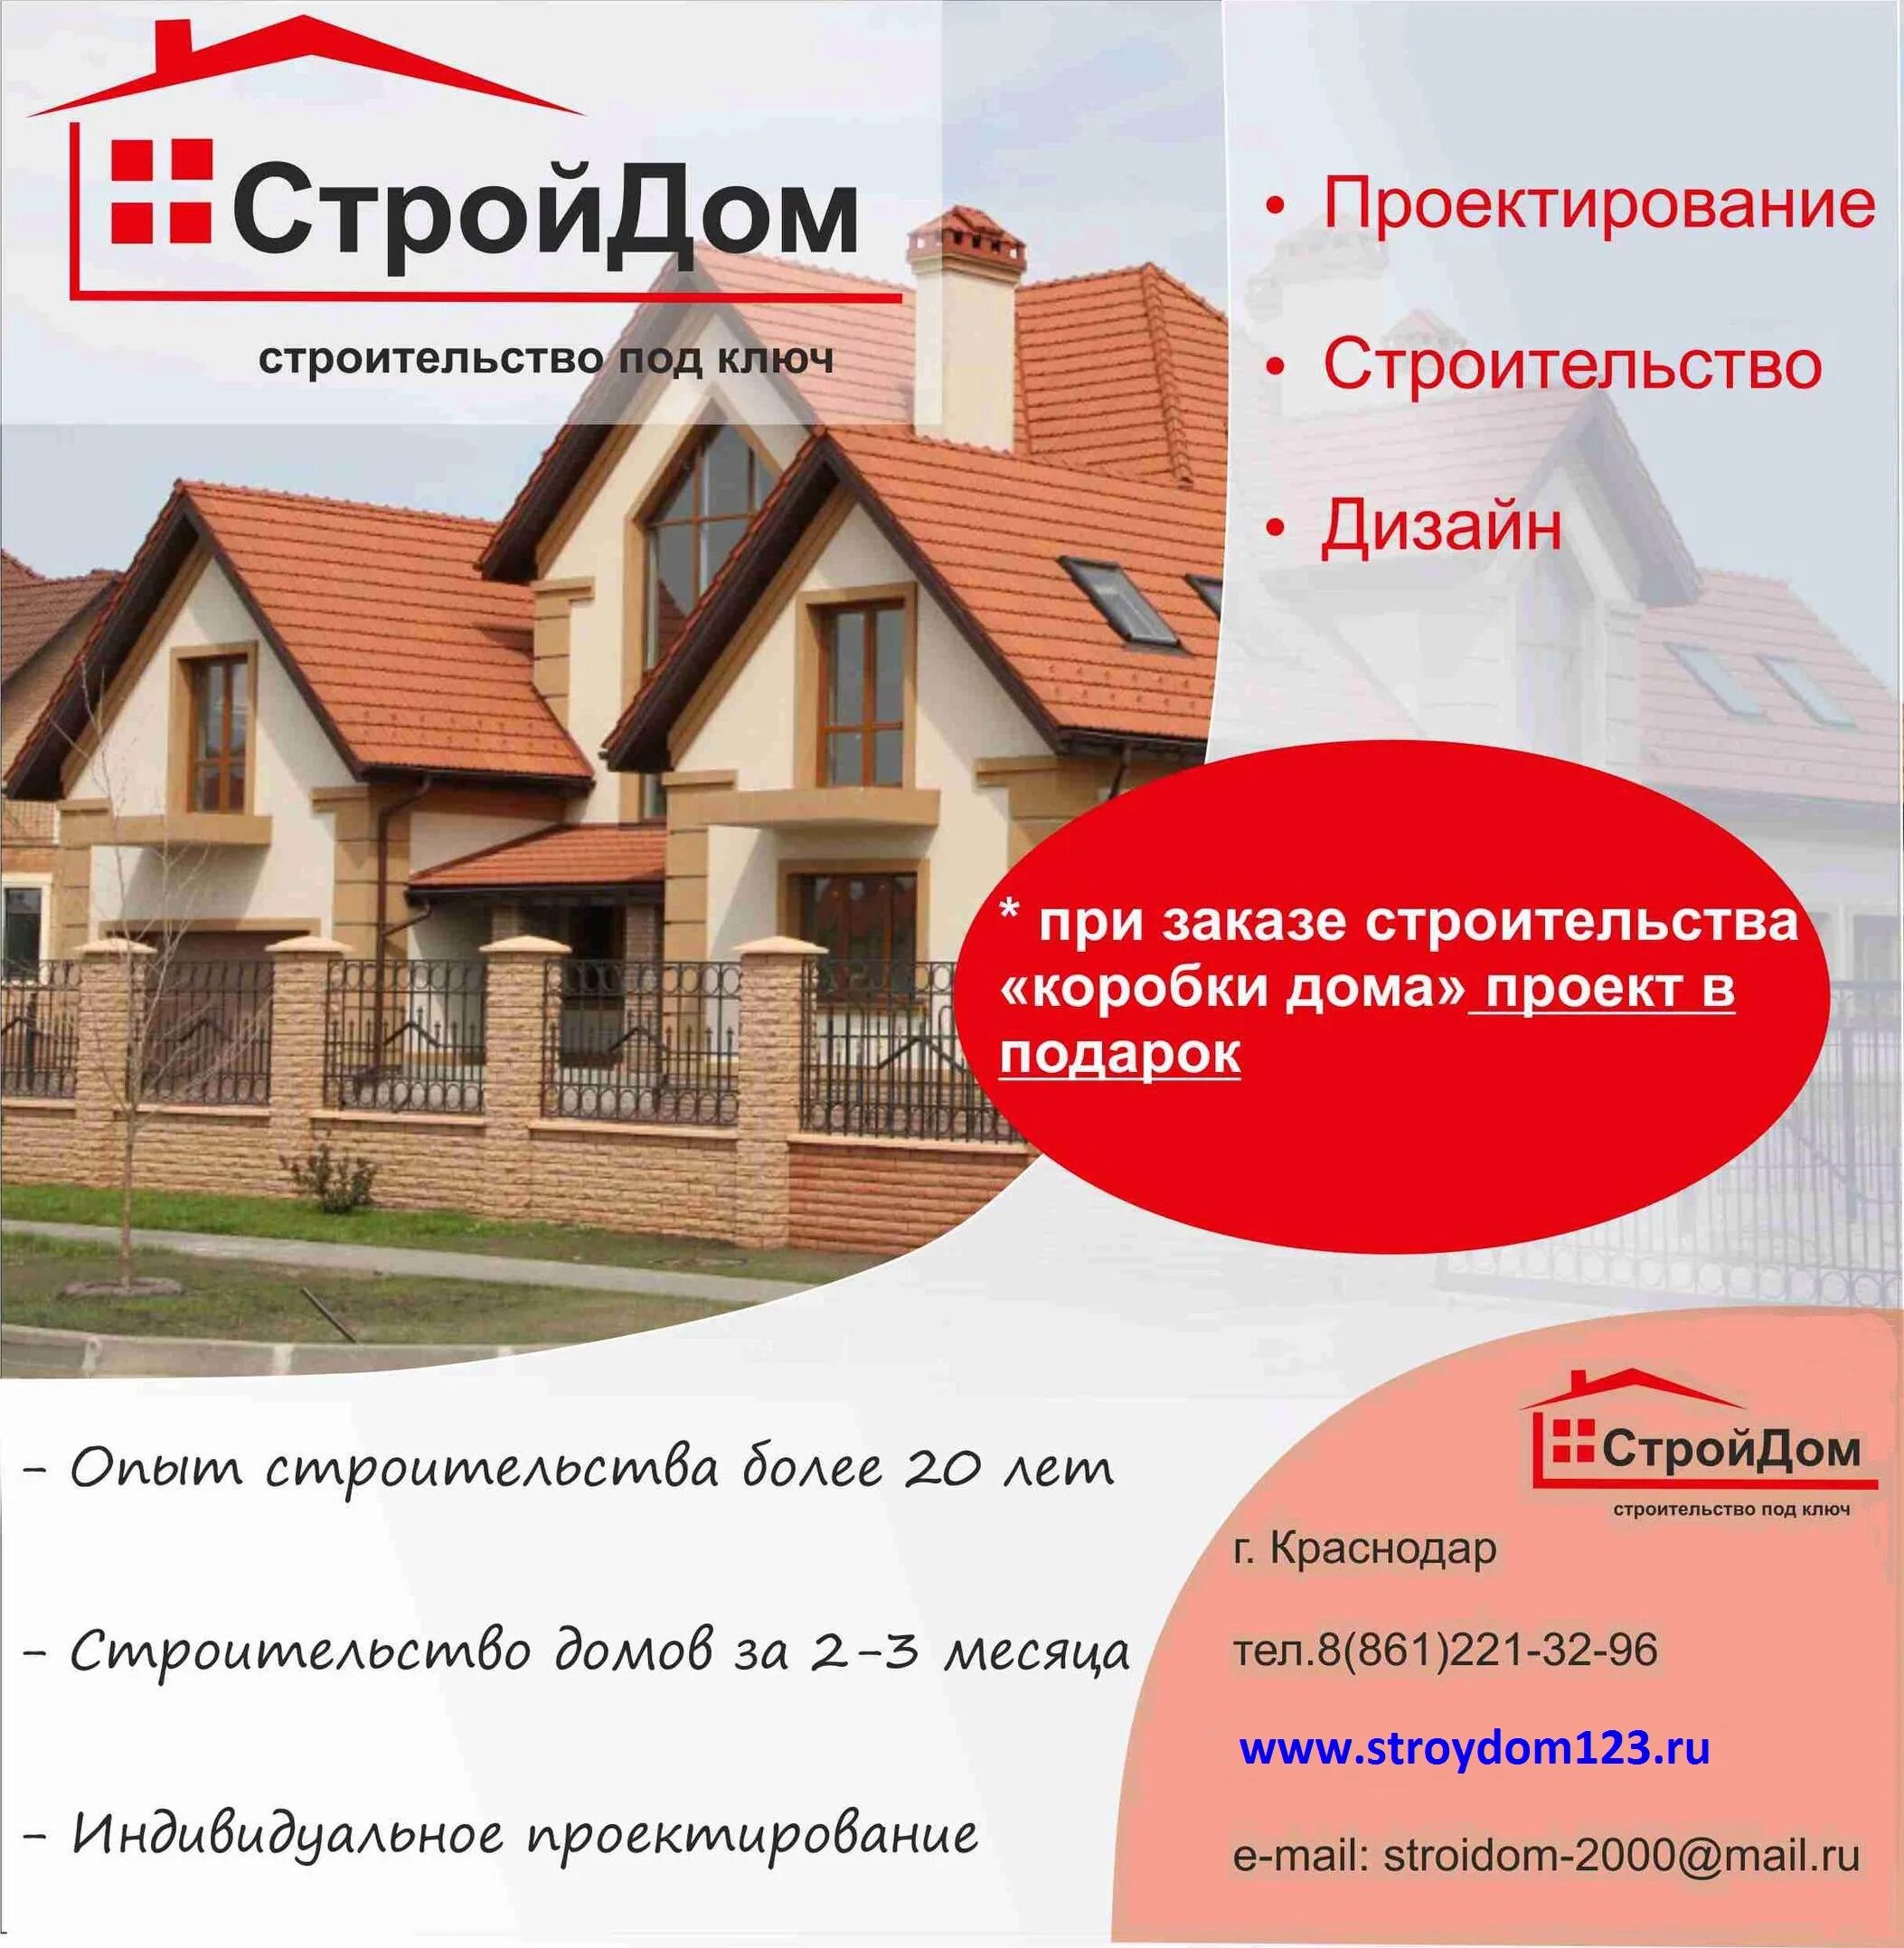 Строительство коттеджей ask vrn stroy ru. Реклама строительной компании. Баннер строительной компании частных домов и коттеджей. Баннер строительной компании. Визитка строительной компании.